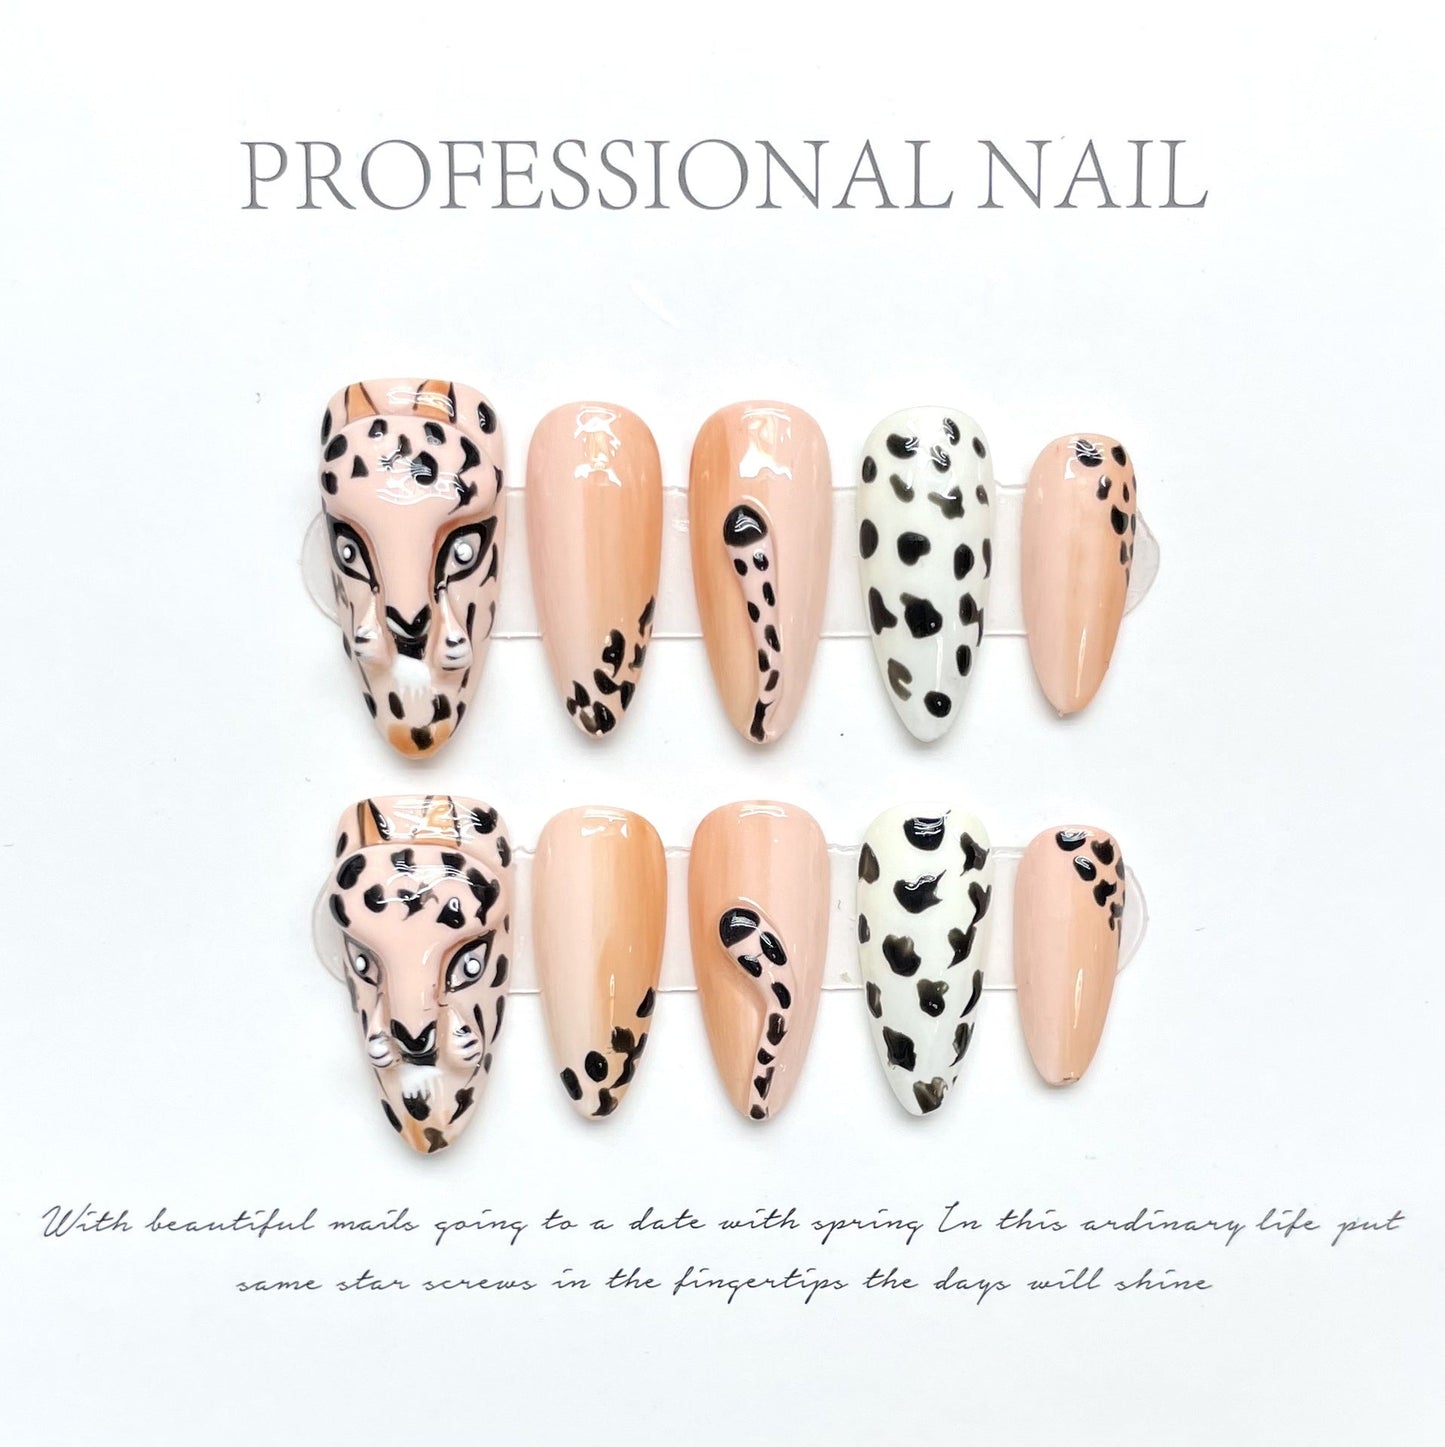 1099 Press-on-nagels in luipaardstijl 100% handgemaakte kunstnagels in nude-kleur